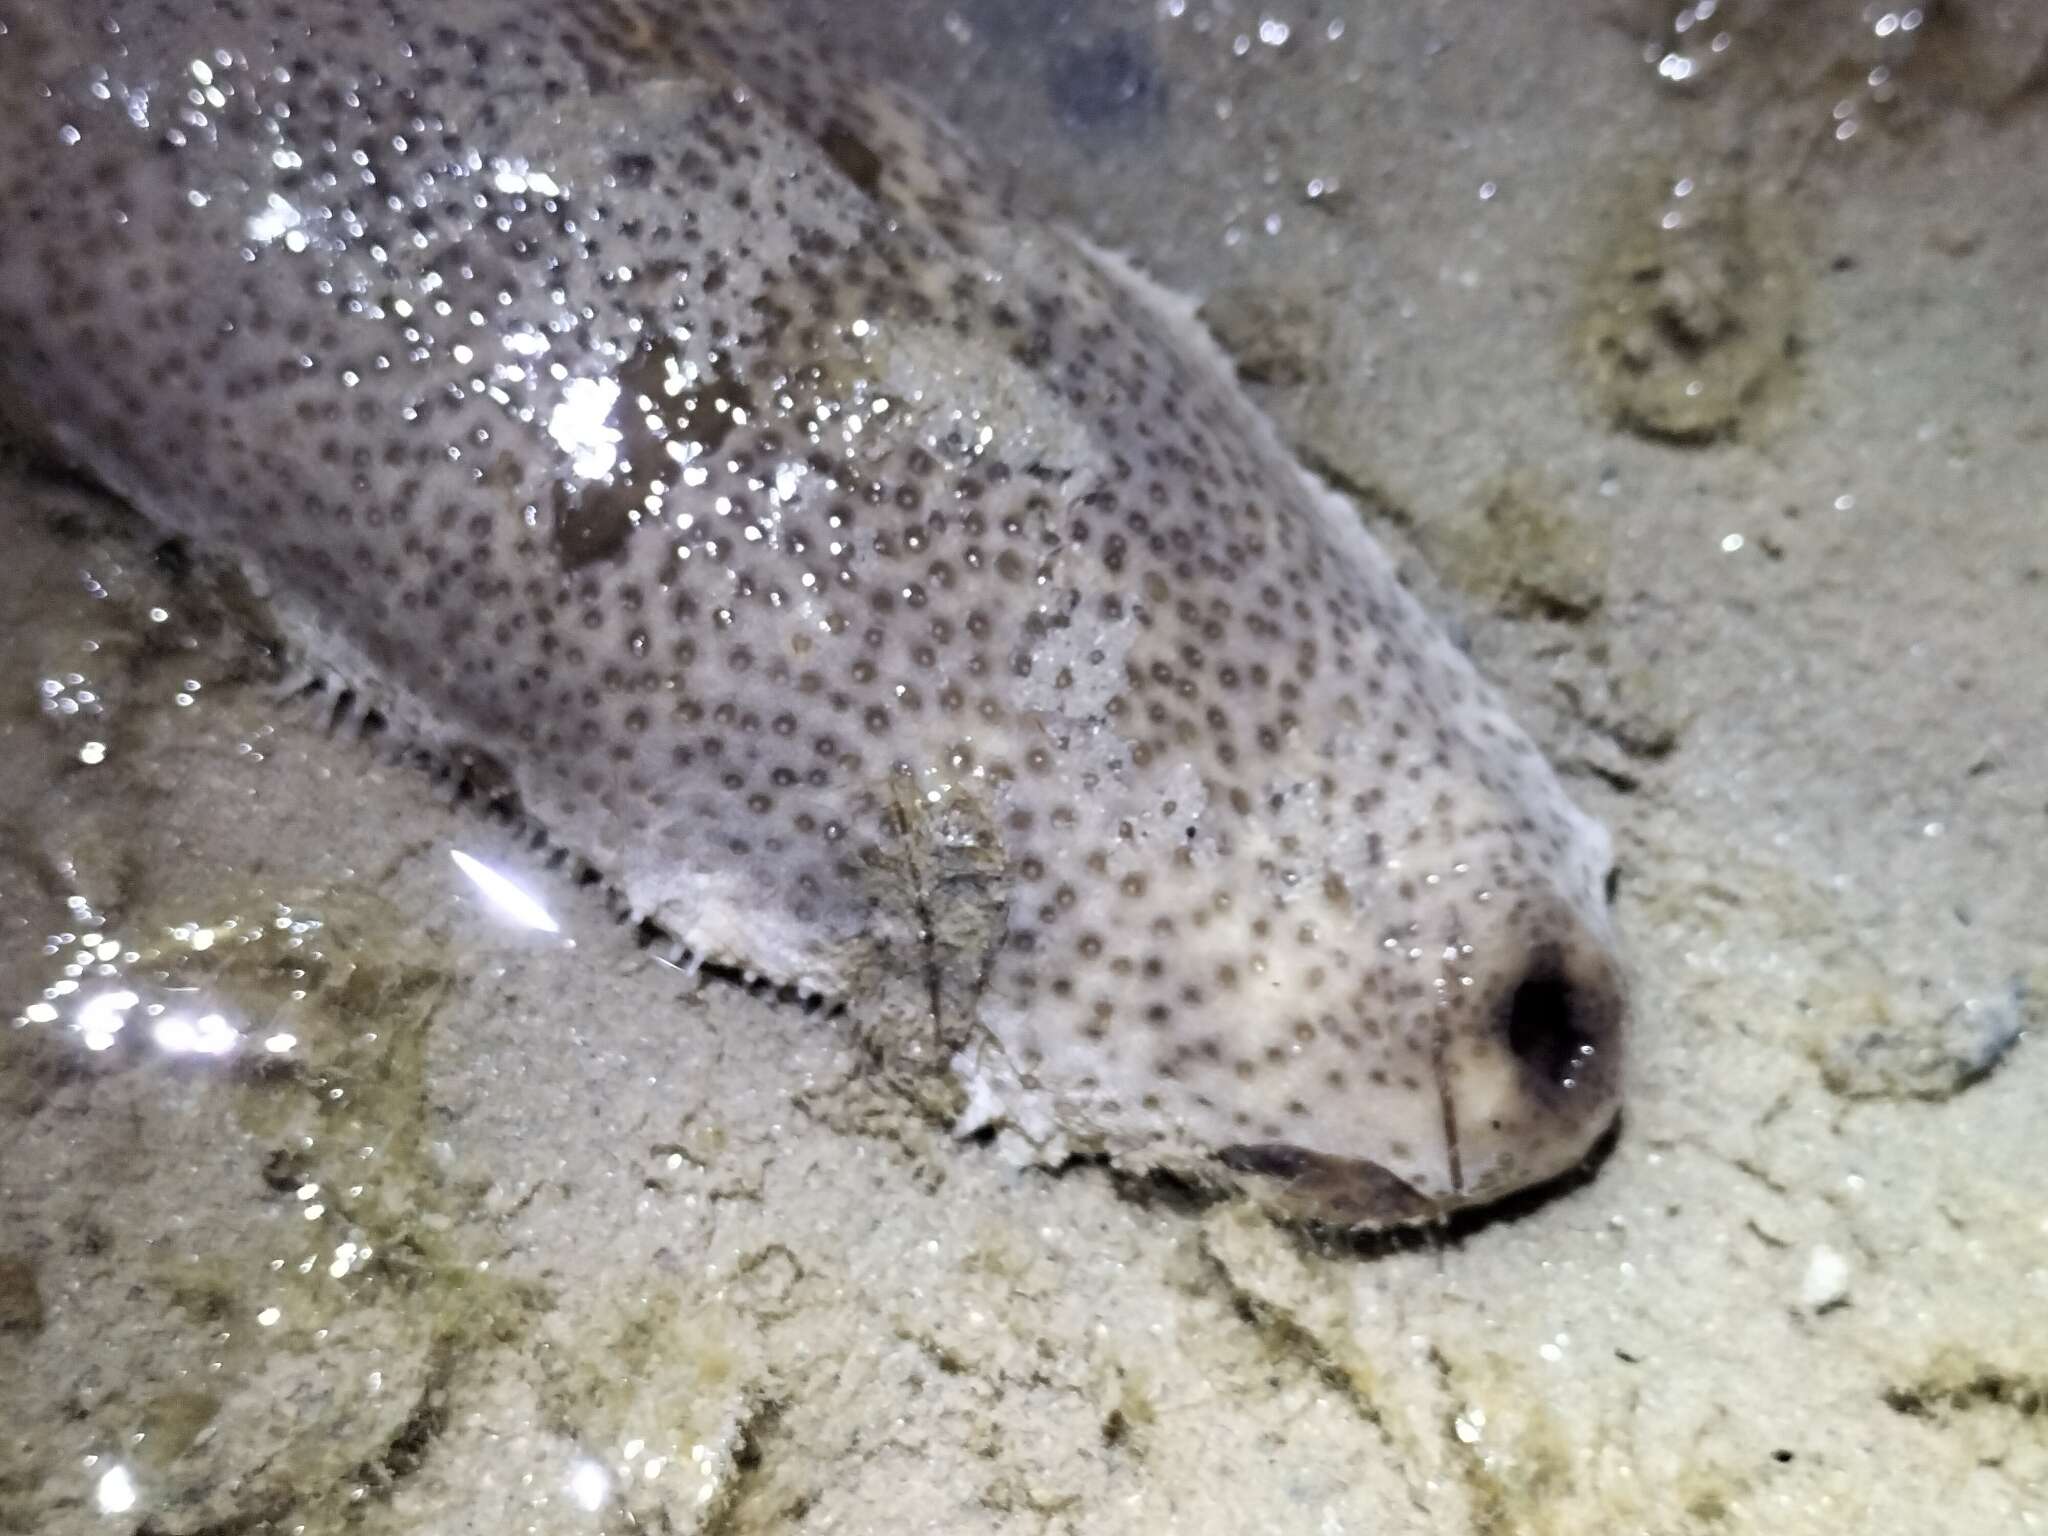 Image of Brown Sandfish